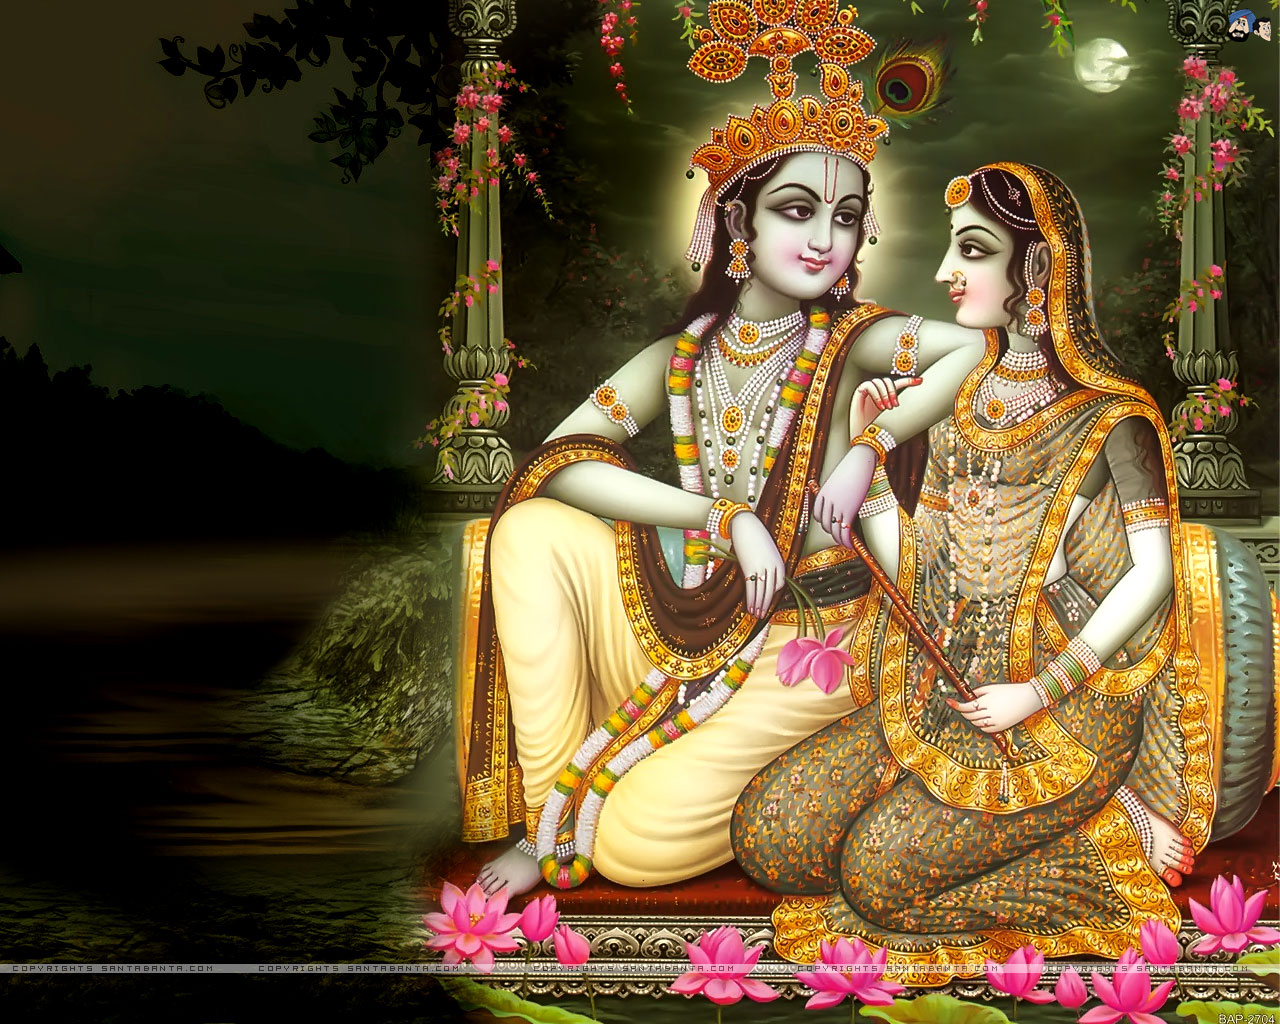 49+] Wallpaper of Lord Krishna - WallpaperSafari